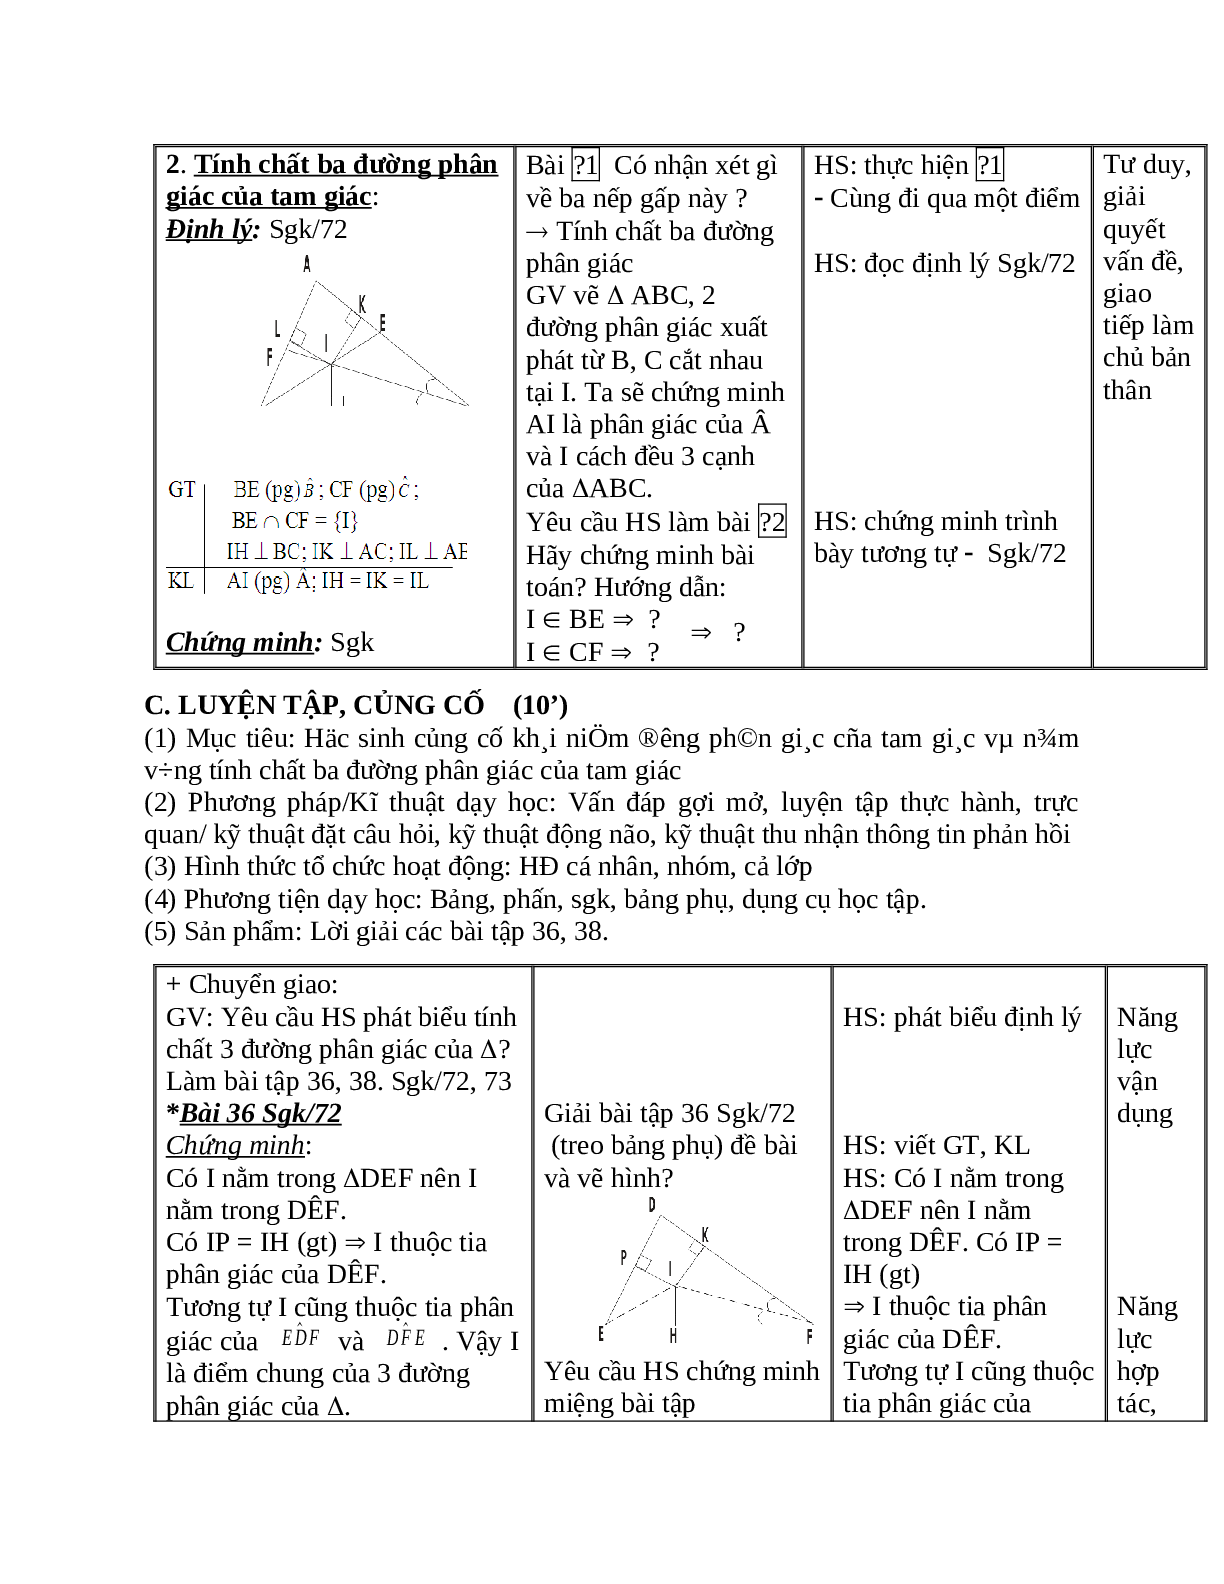 Giáo án Toán học 7 bài 6: Tính chất ba đường phân giác của tam giác hay nhất (trang 4)